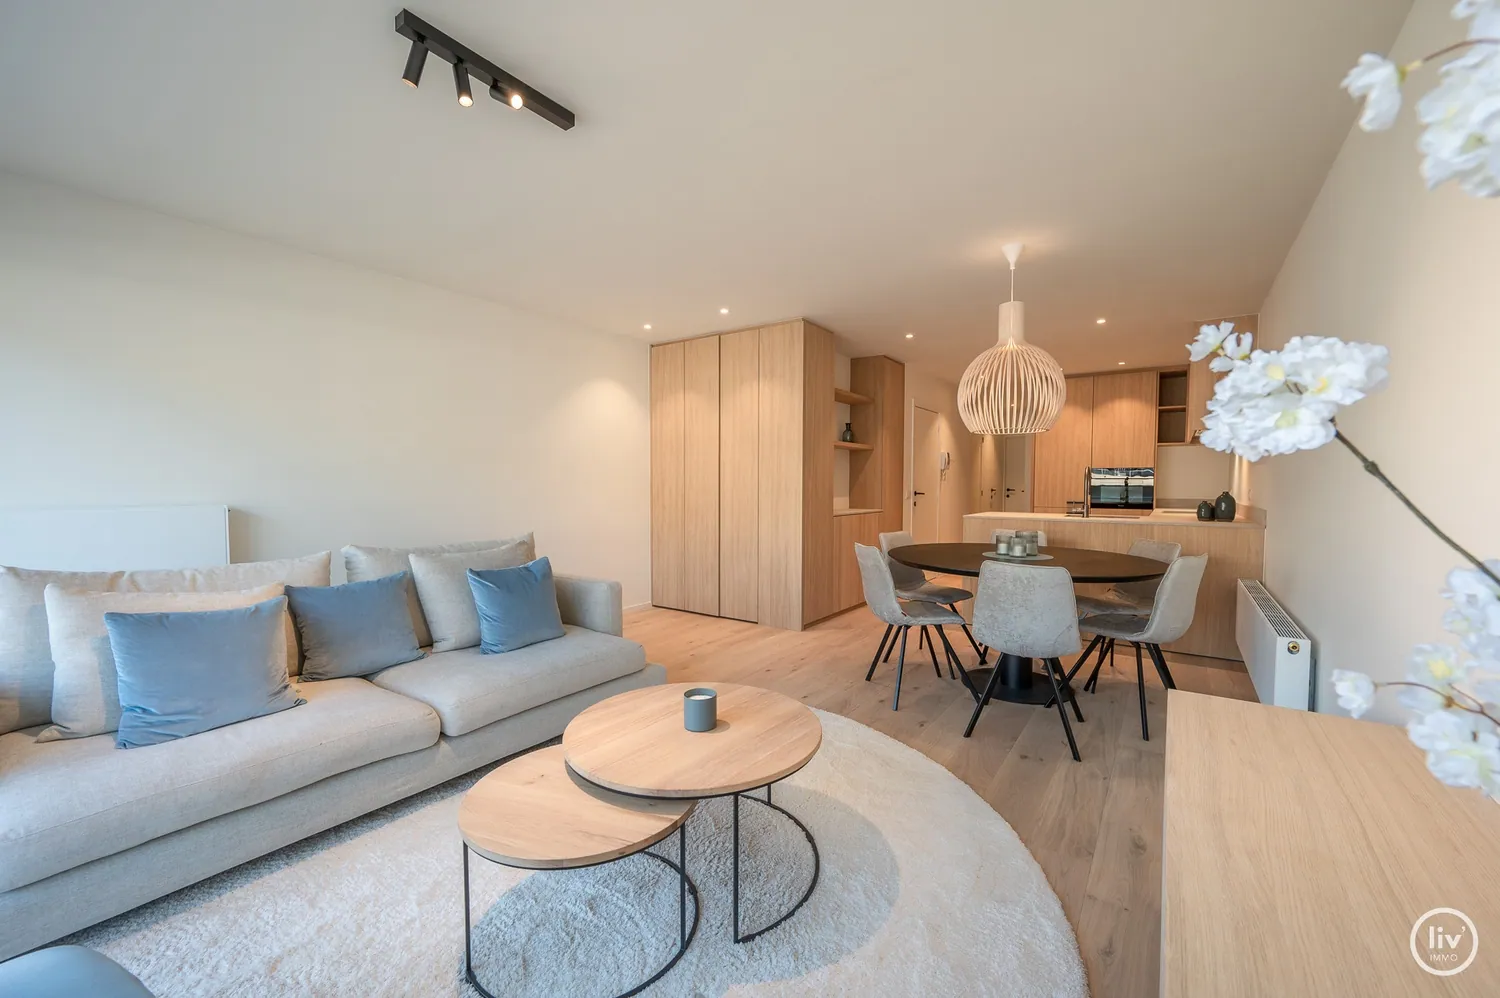 Prachtig gerenoveerd en tevens lichtrijk appartement met mooi zonnig terras centraal gelegen vlakbij de Lippenslaan te Knokke.